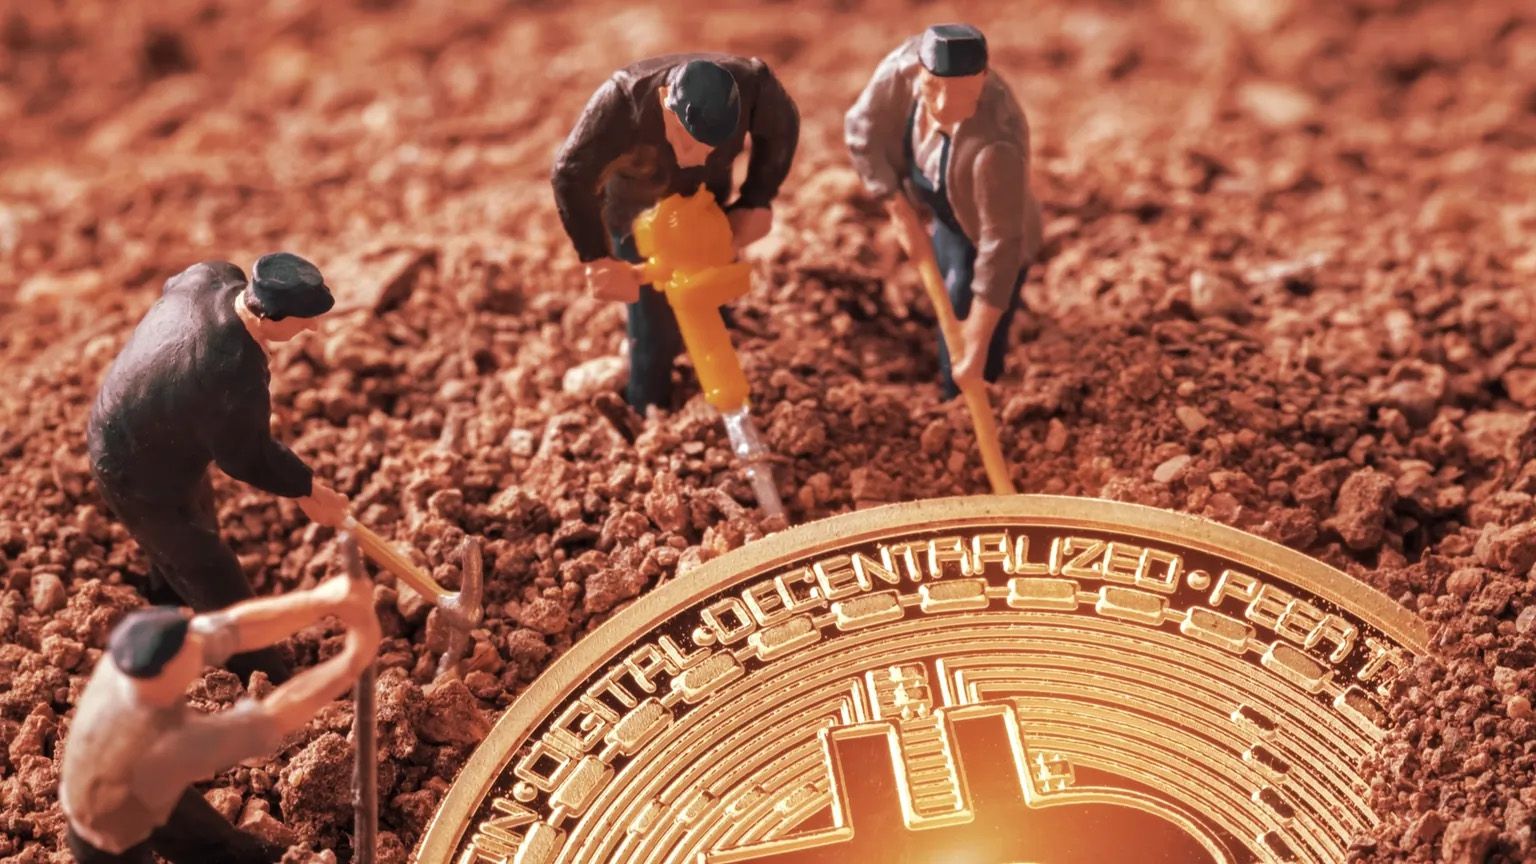 Bitcoin Mining Operations